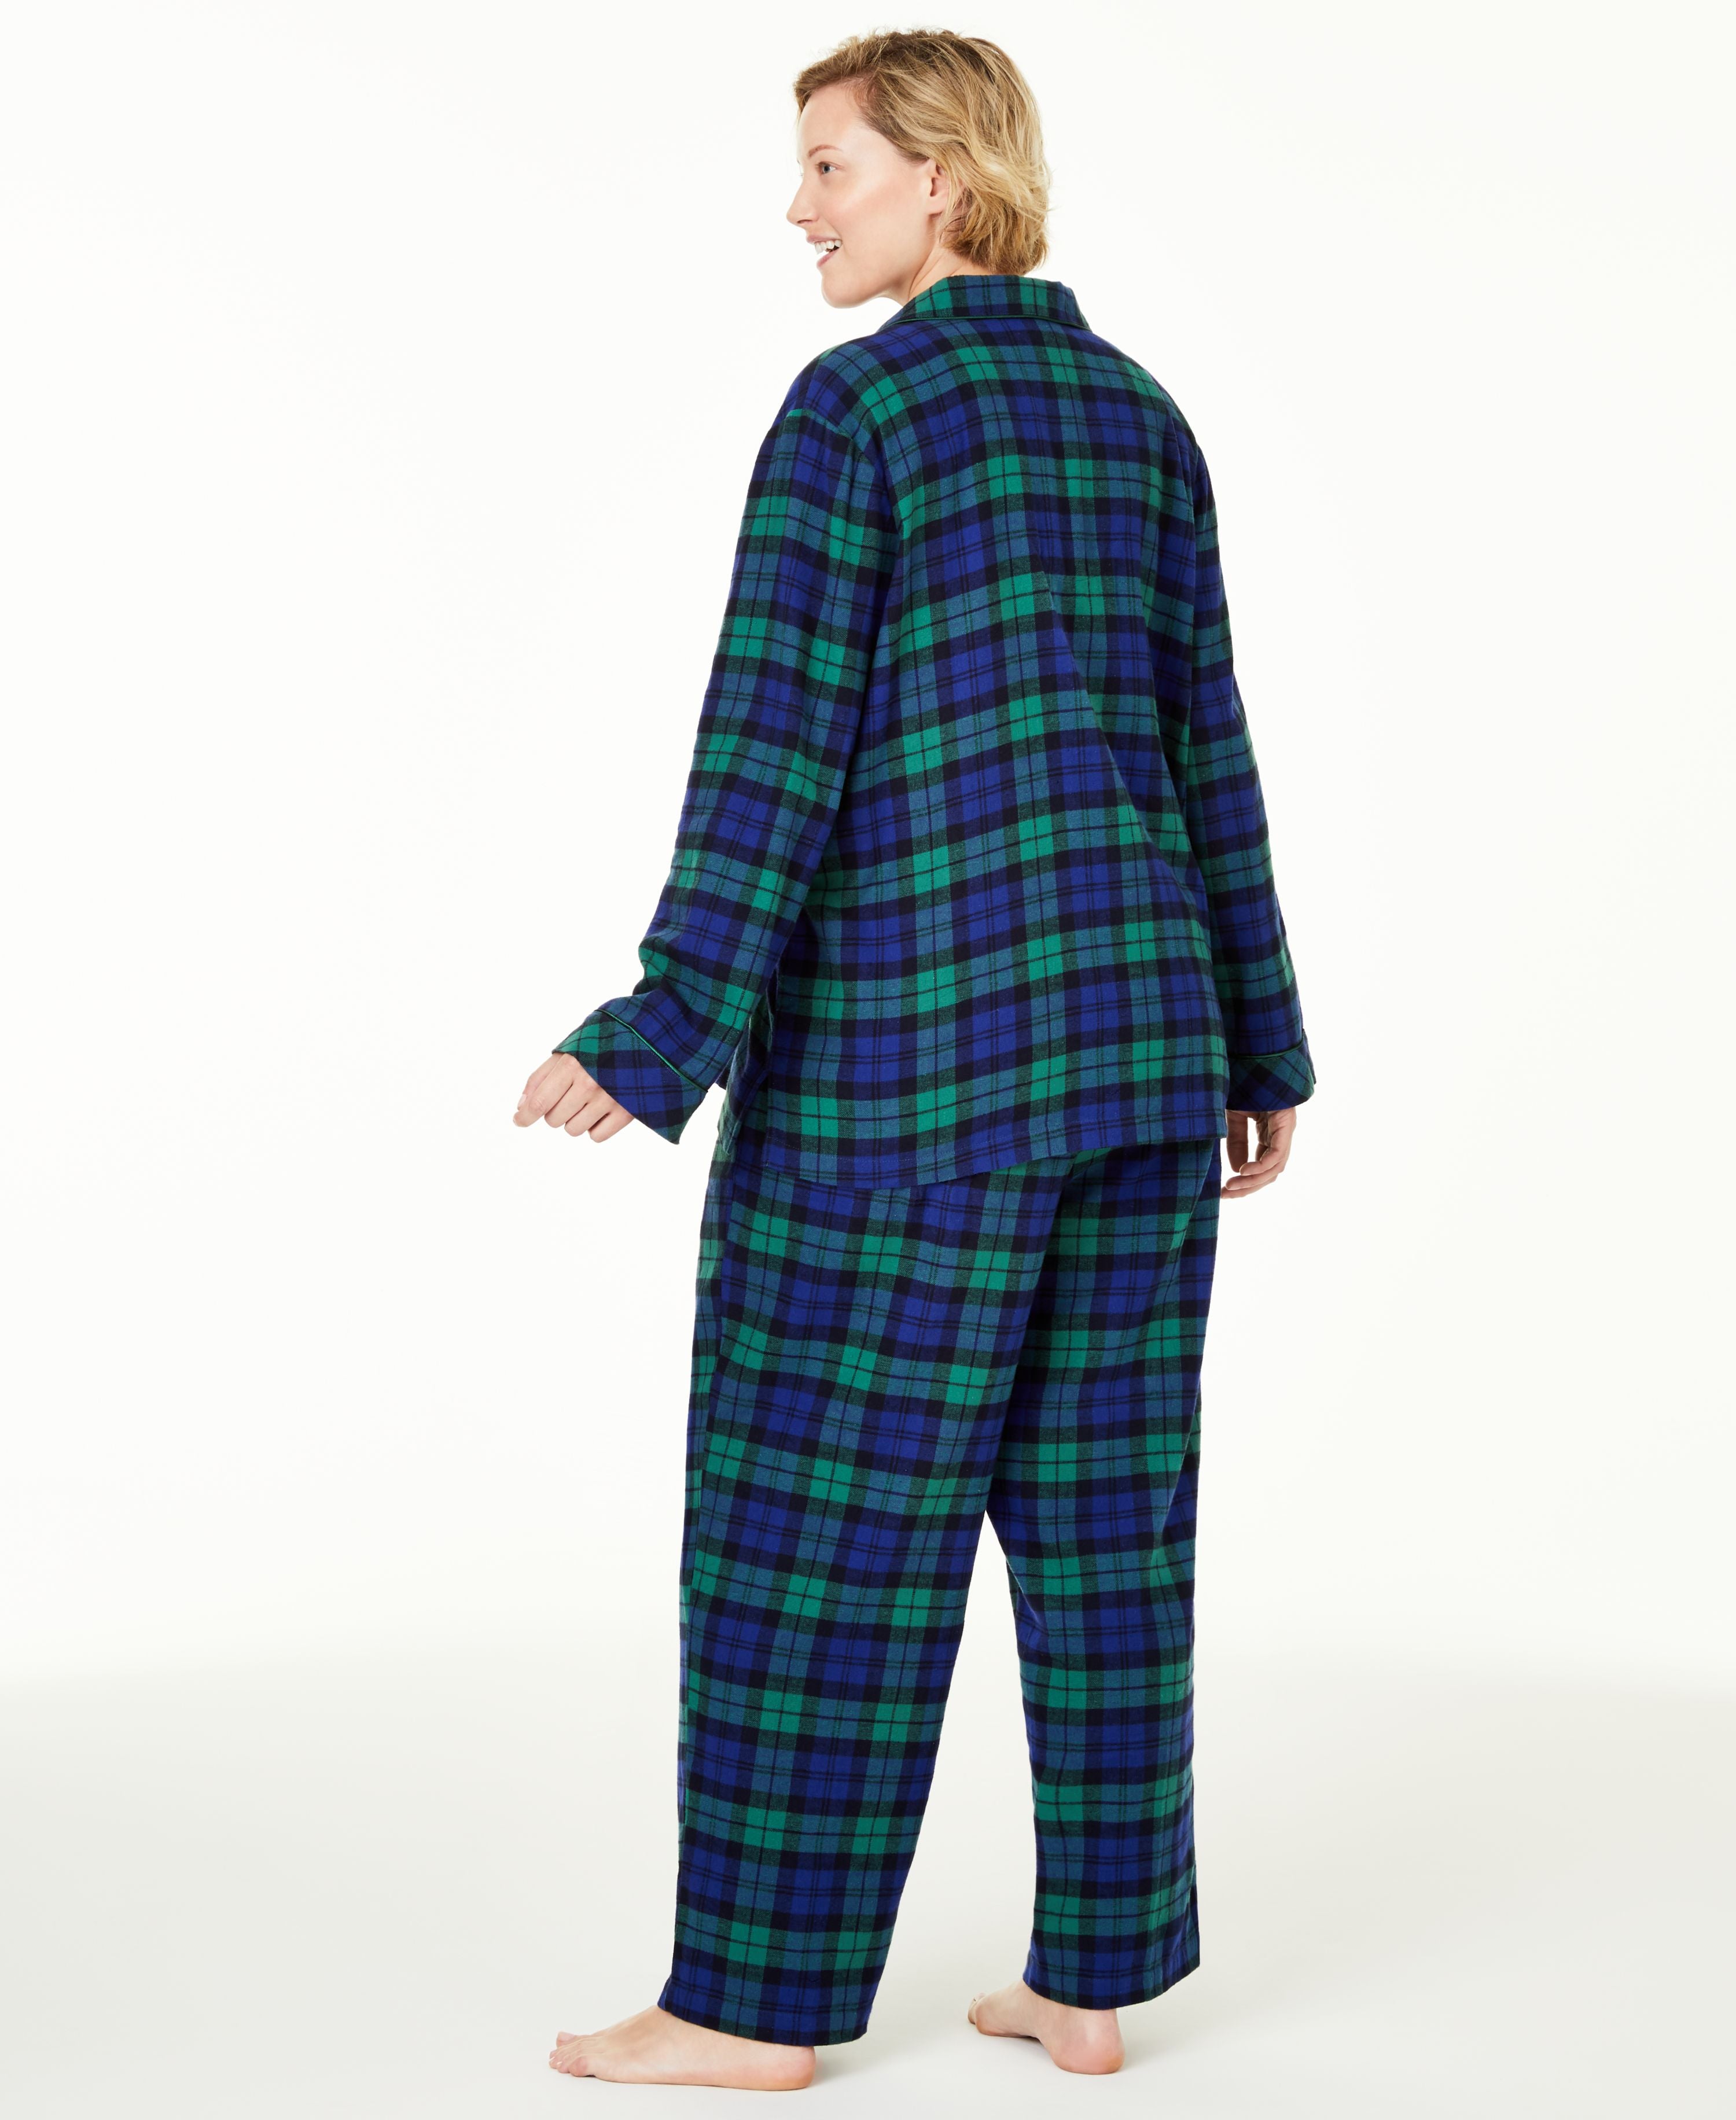 Family Pajamas Womens Matching Plus Size Black Watch Plaid Family Pajama Set